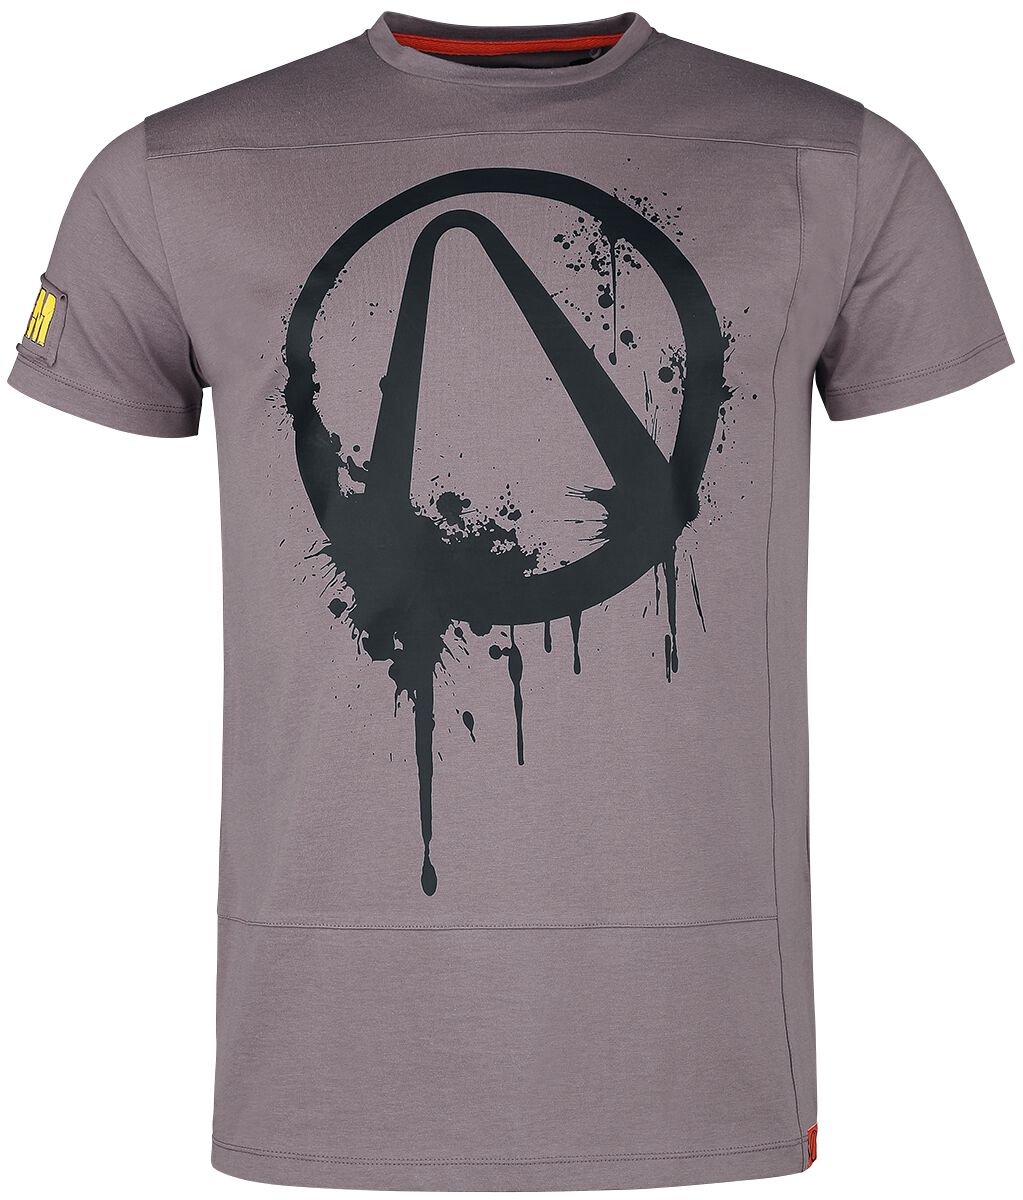 Borderlands - Gaming T-Shirt - Mayhem - S bis M - für Männer - Größe S - braun  - EMP exklusives Merchandise!